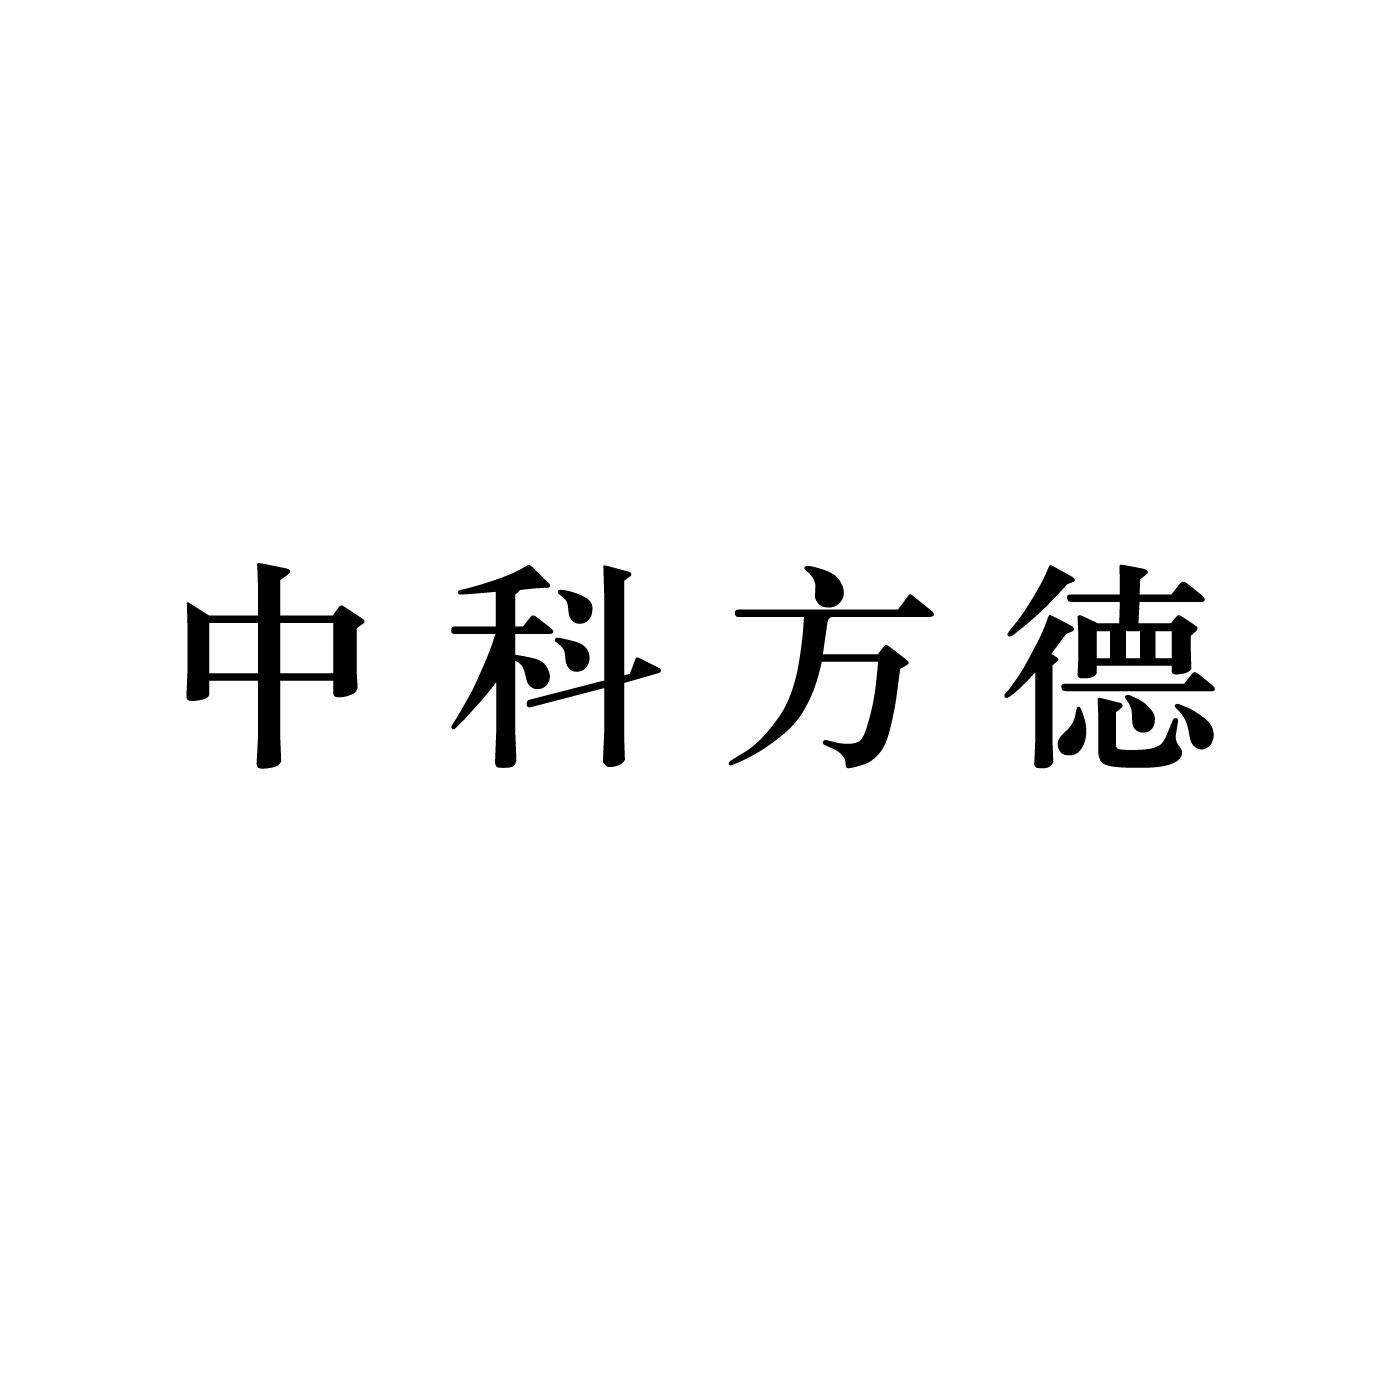 中科方德logo图片